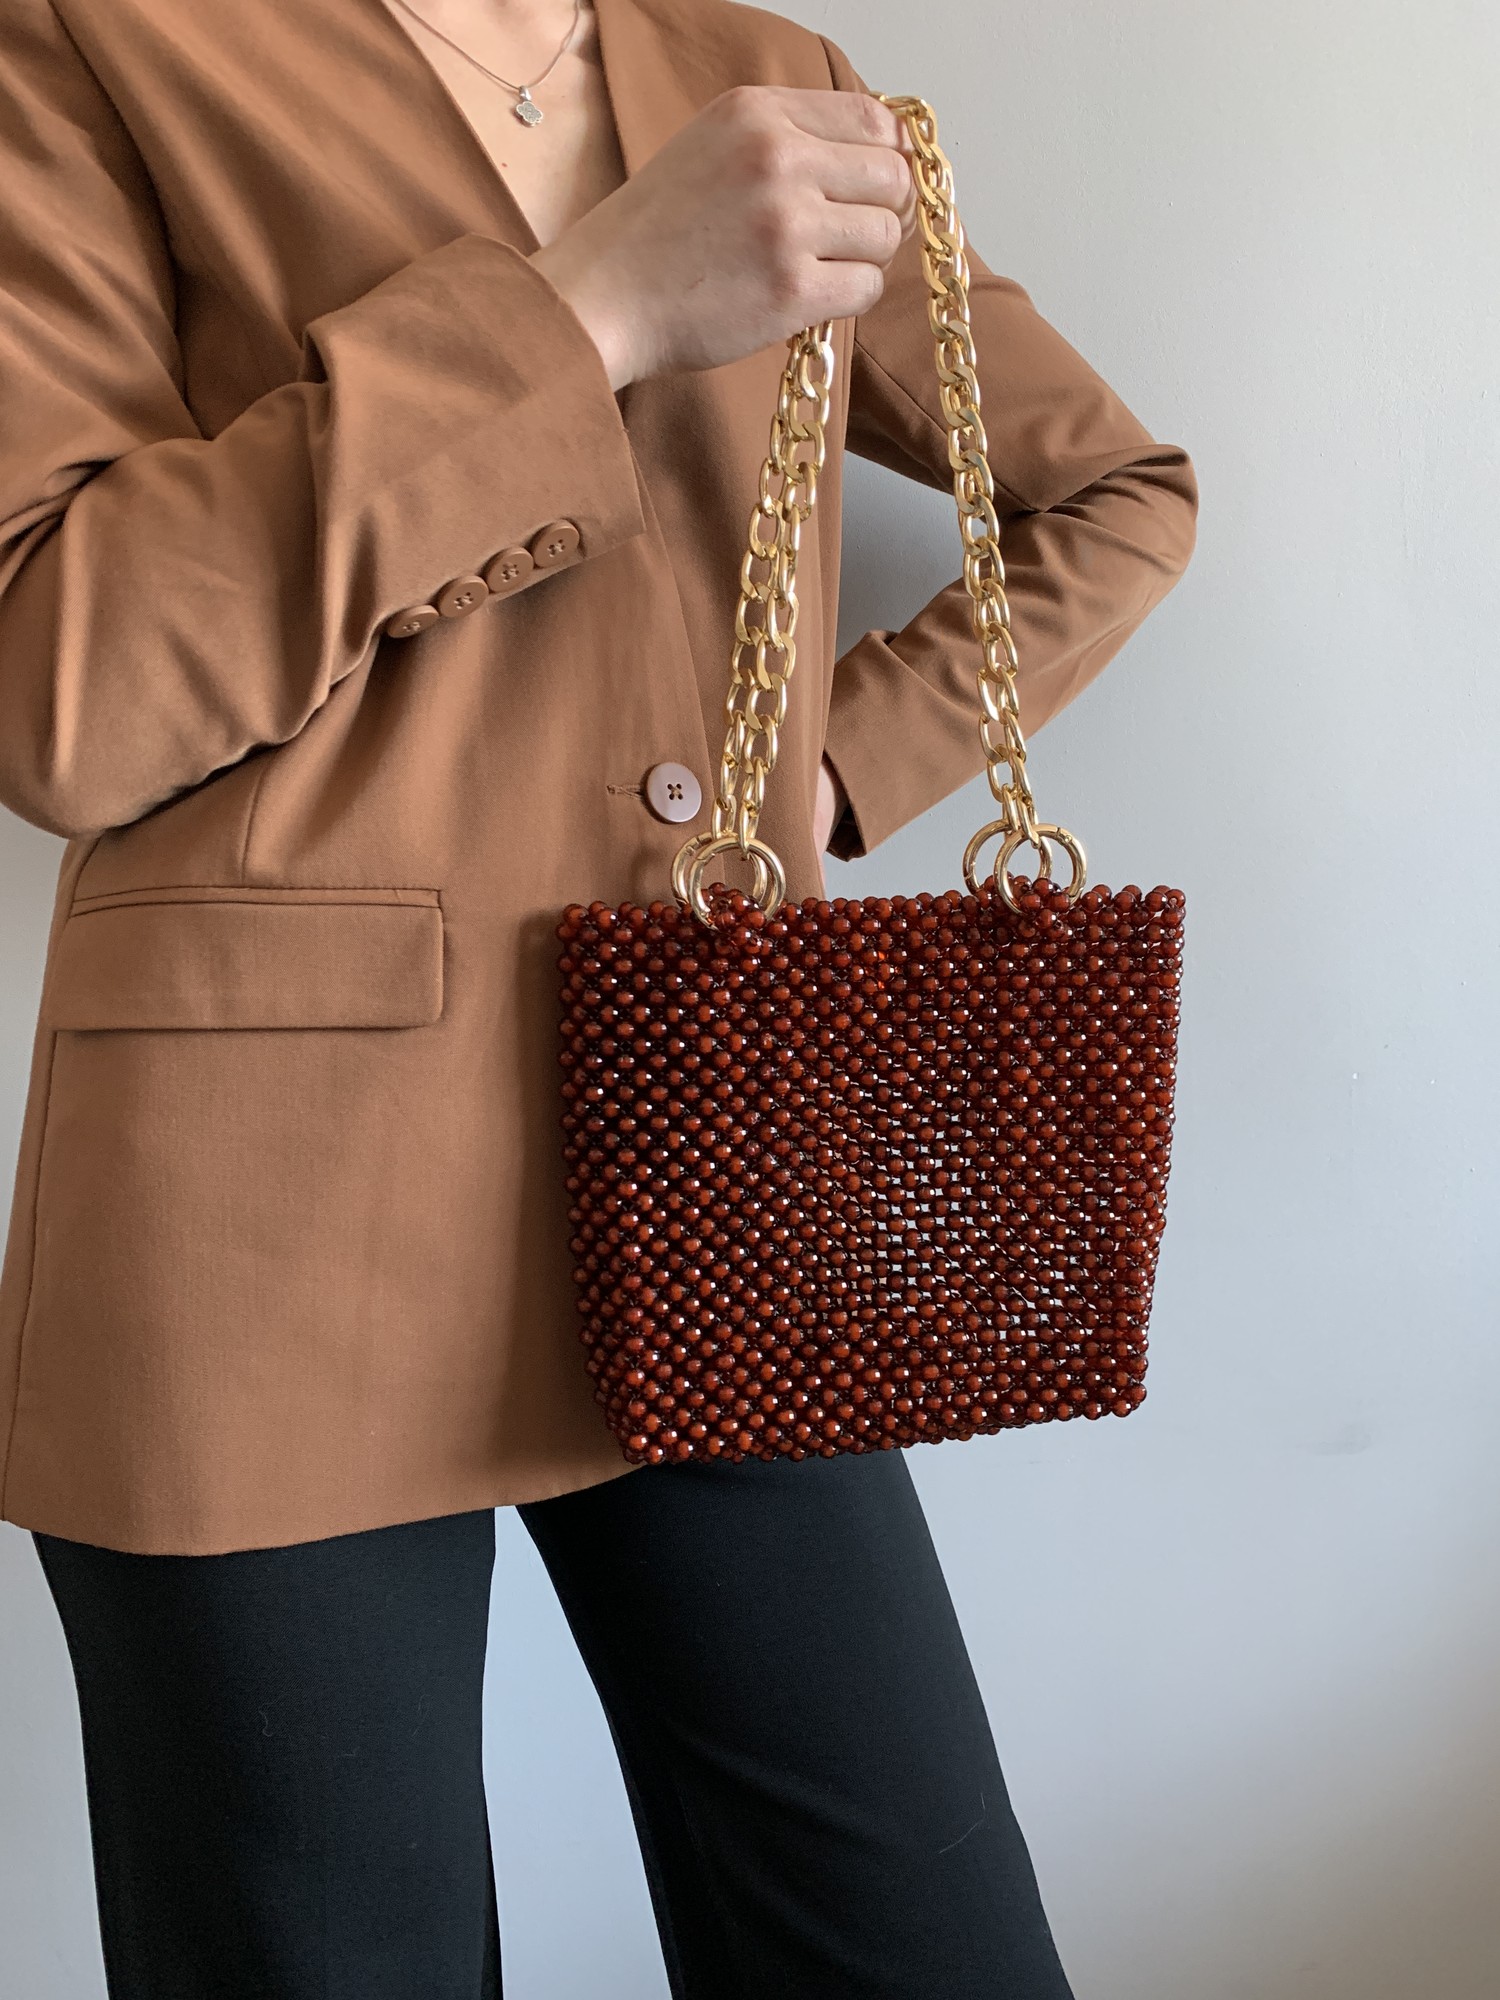 Basic brown bag made of acrylic beads